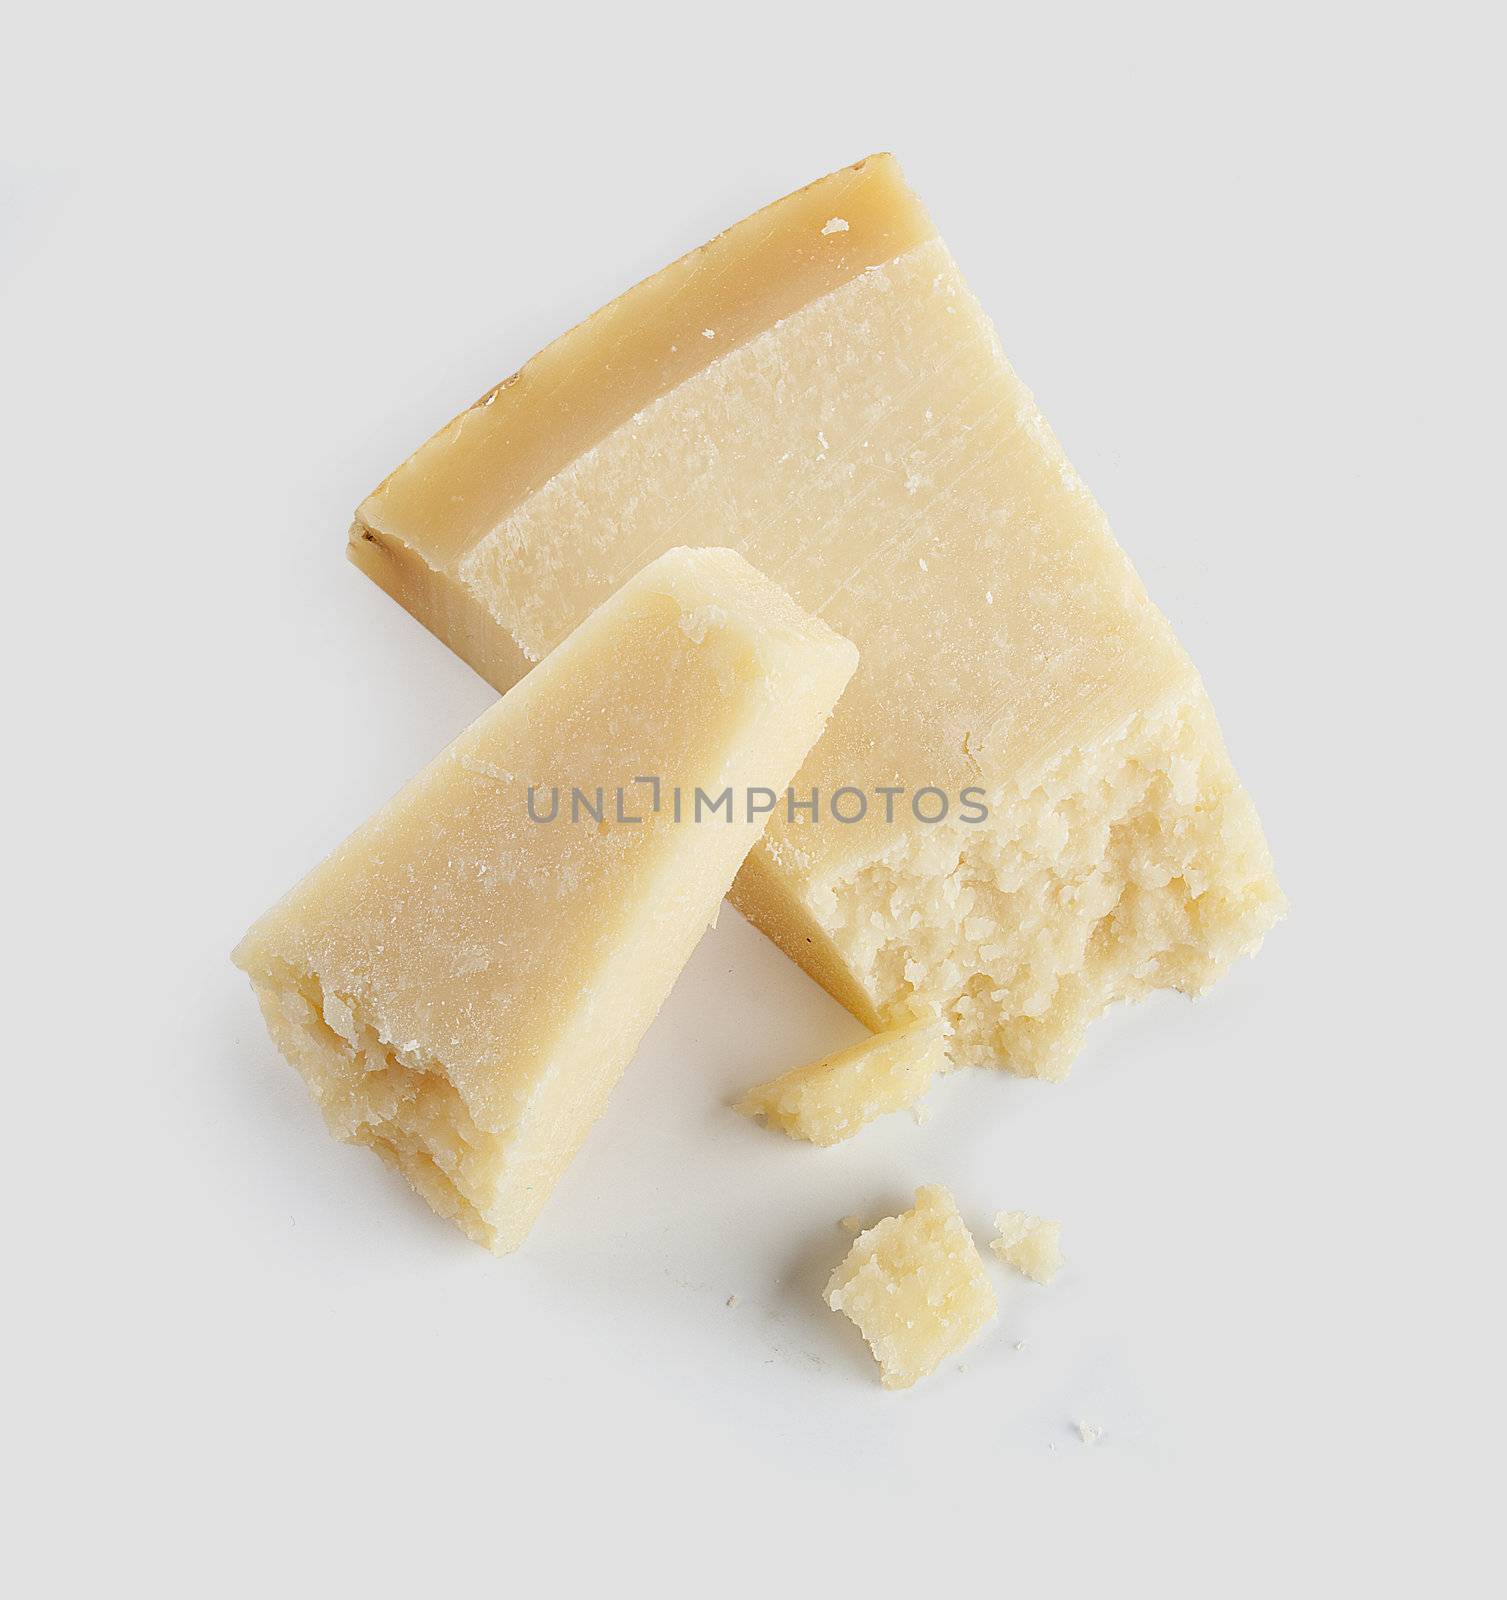 Hard cheese by Angorius